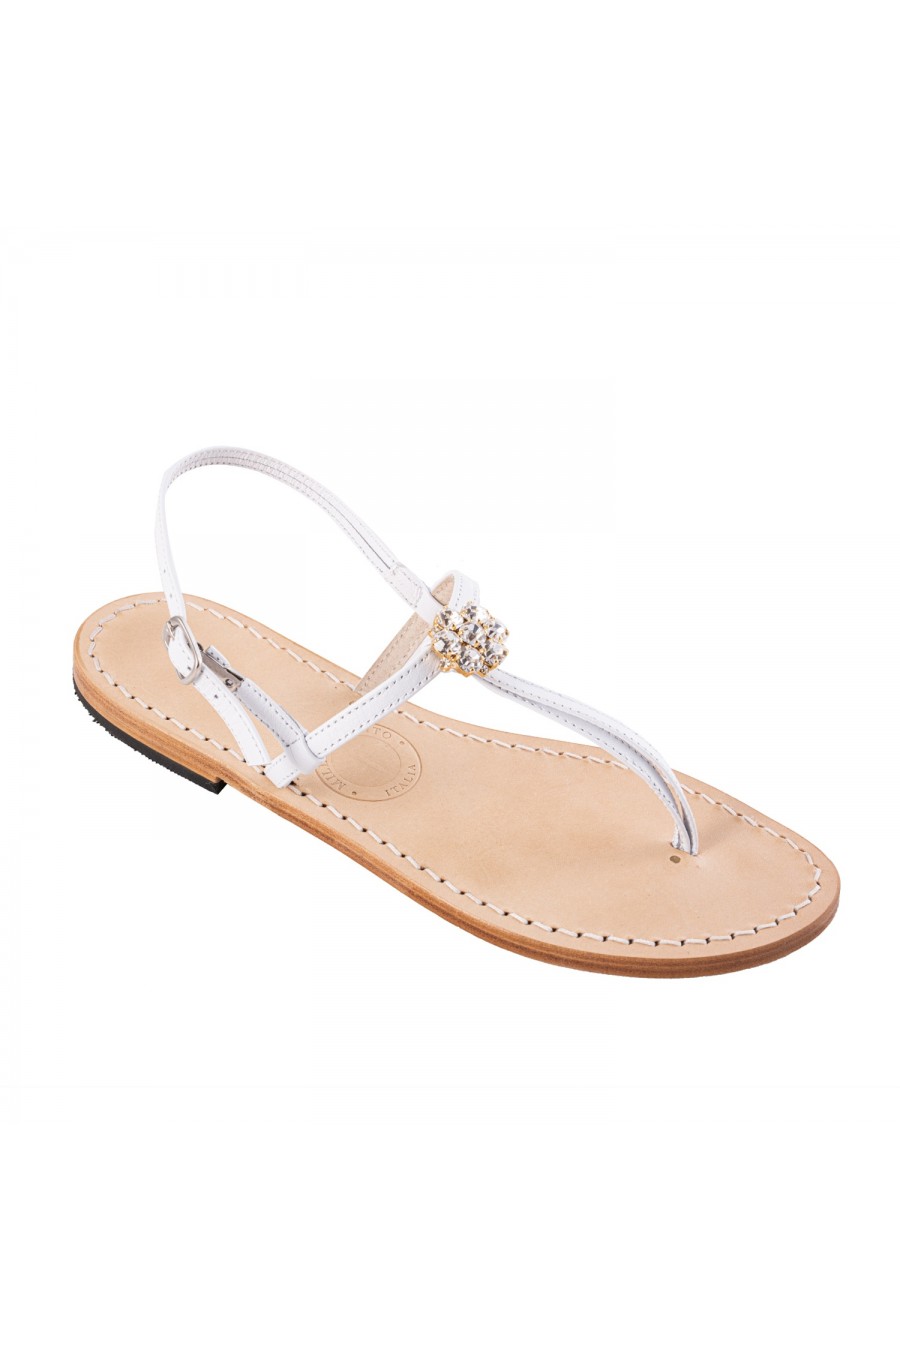 Cinque Terre Jeweled flat sandals